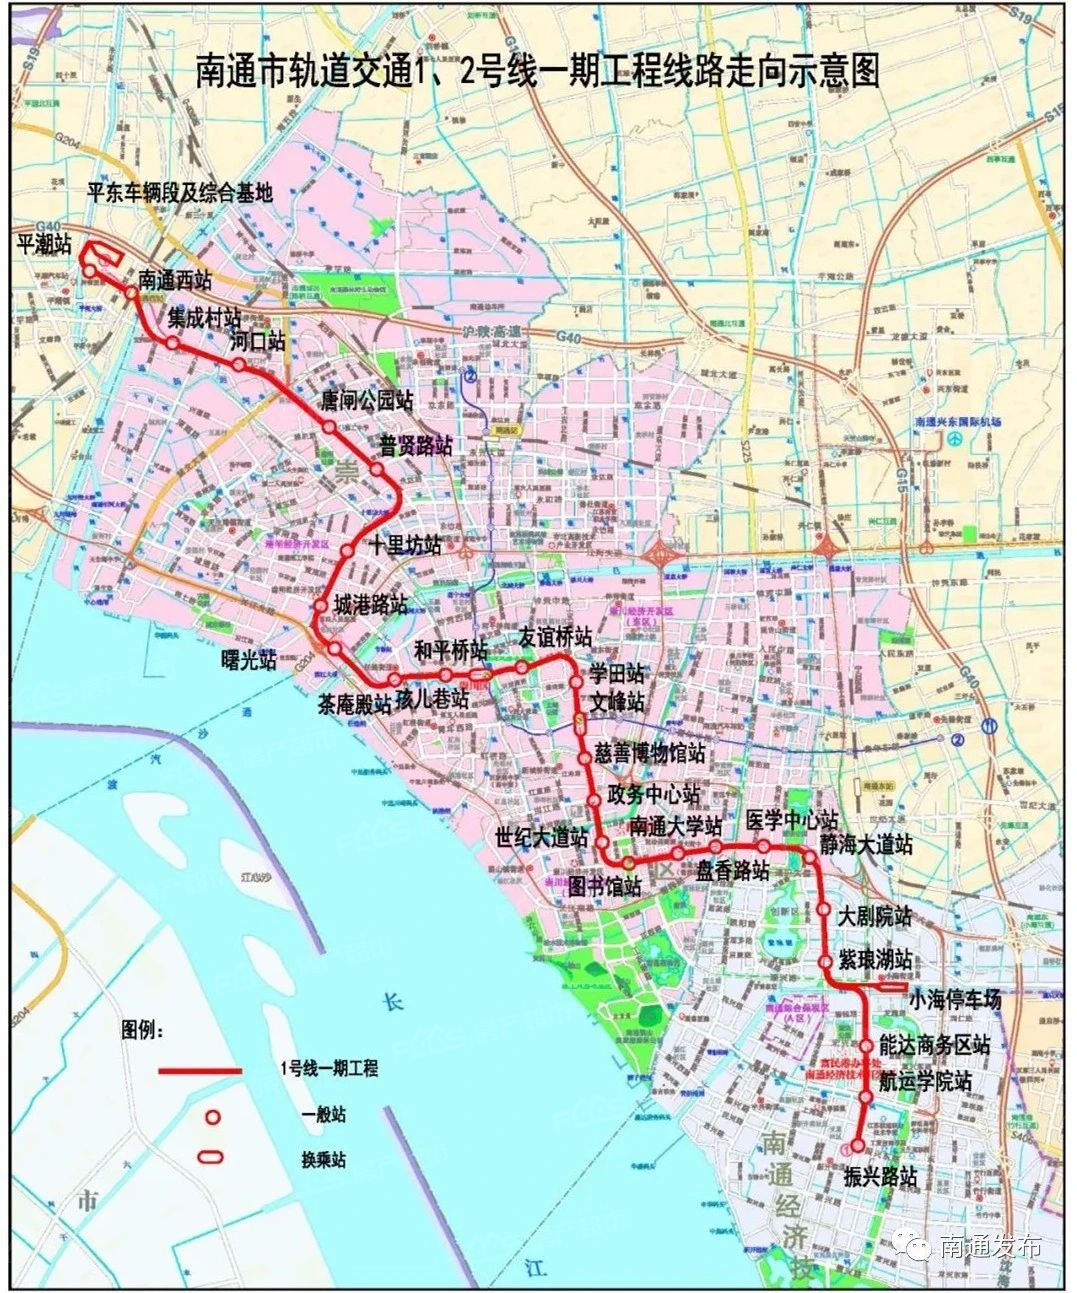 图1 南通市轨道交通1号线一期工程线路图